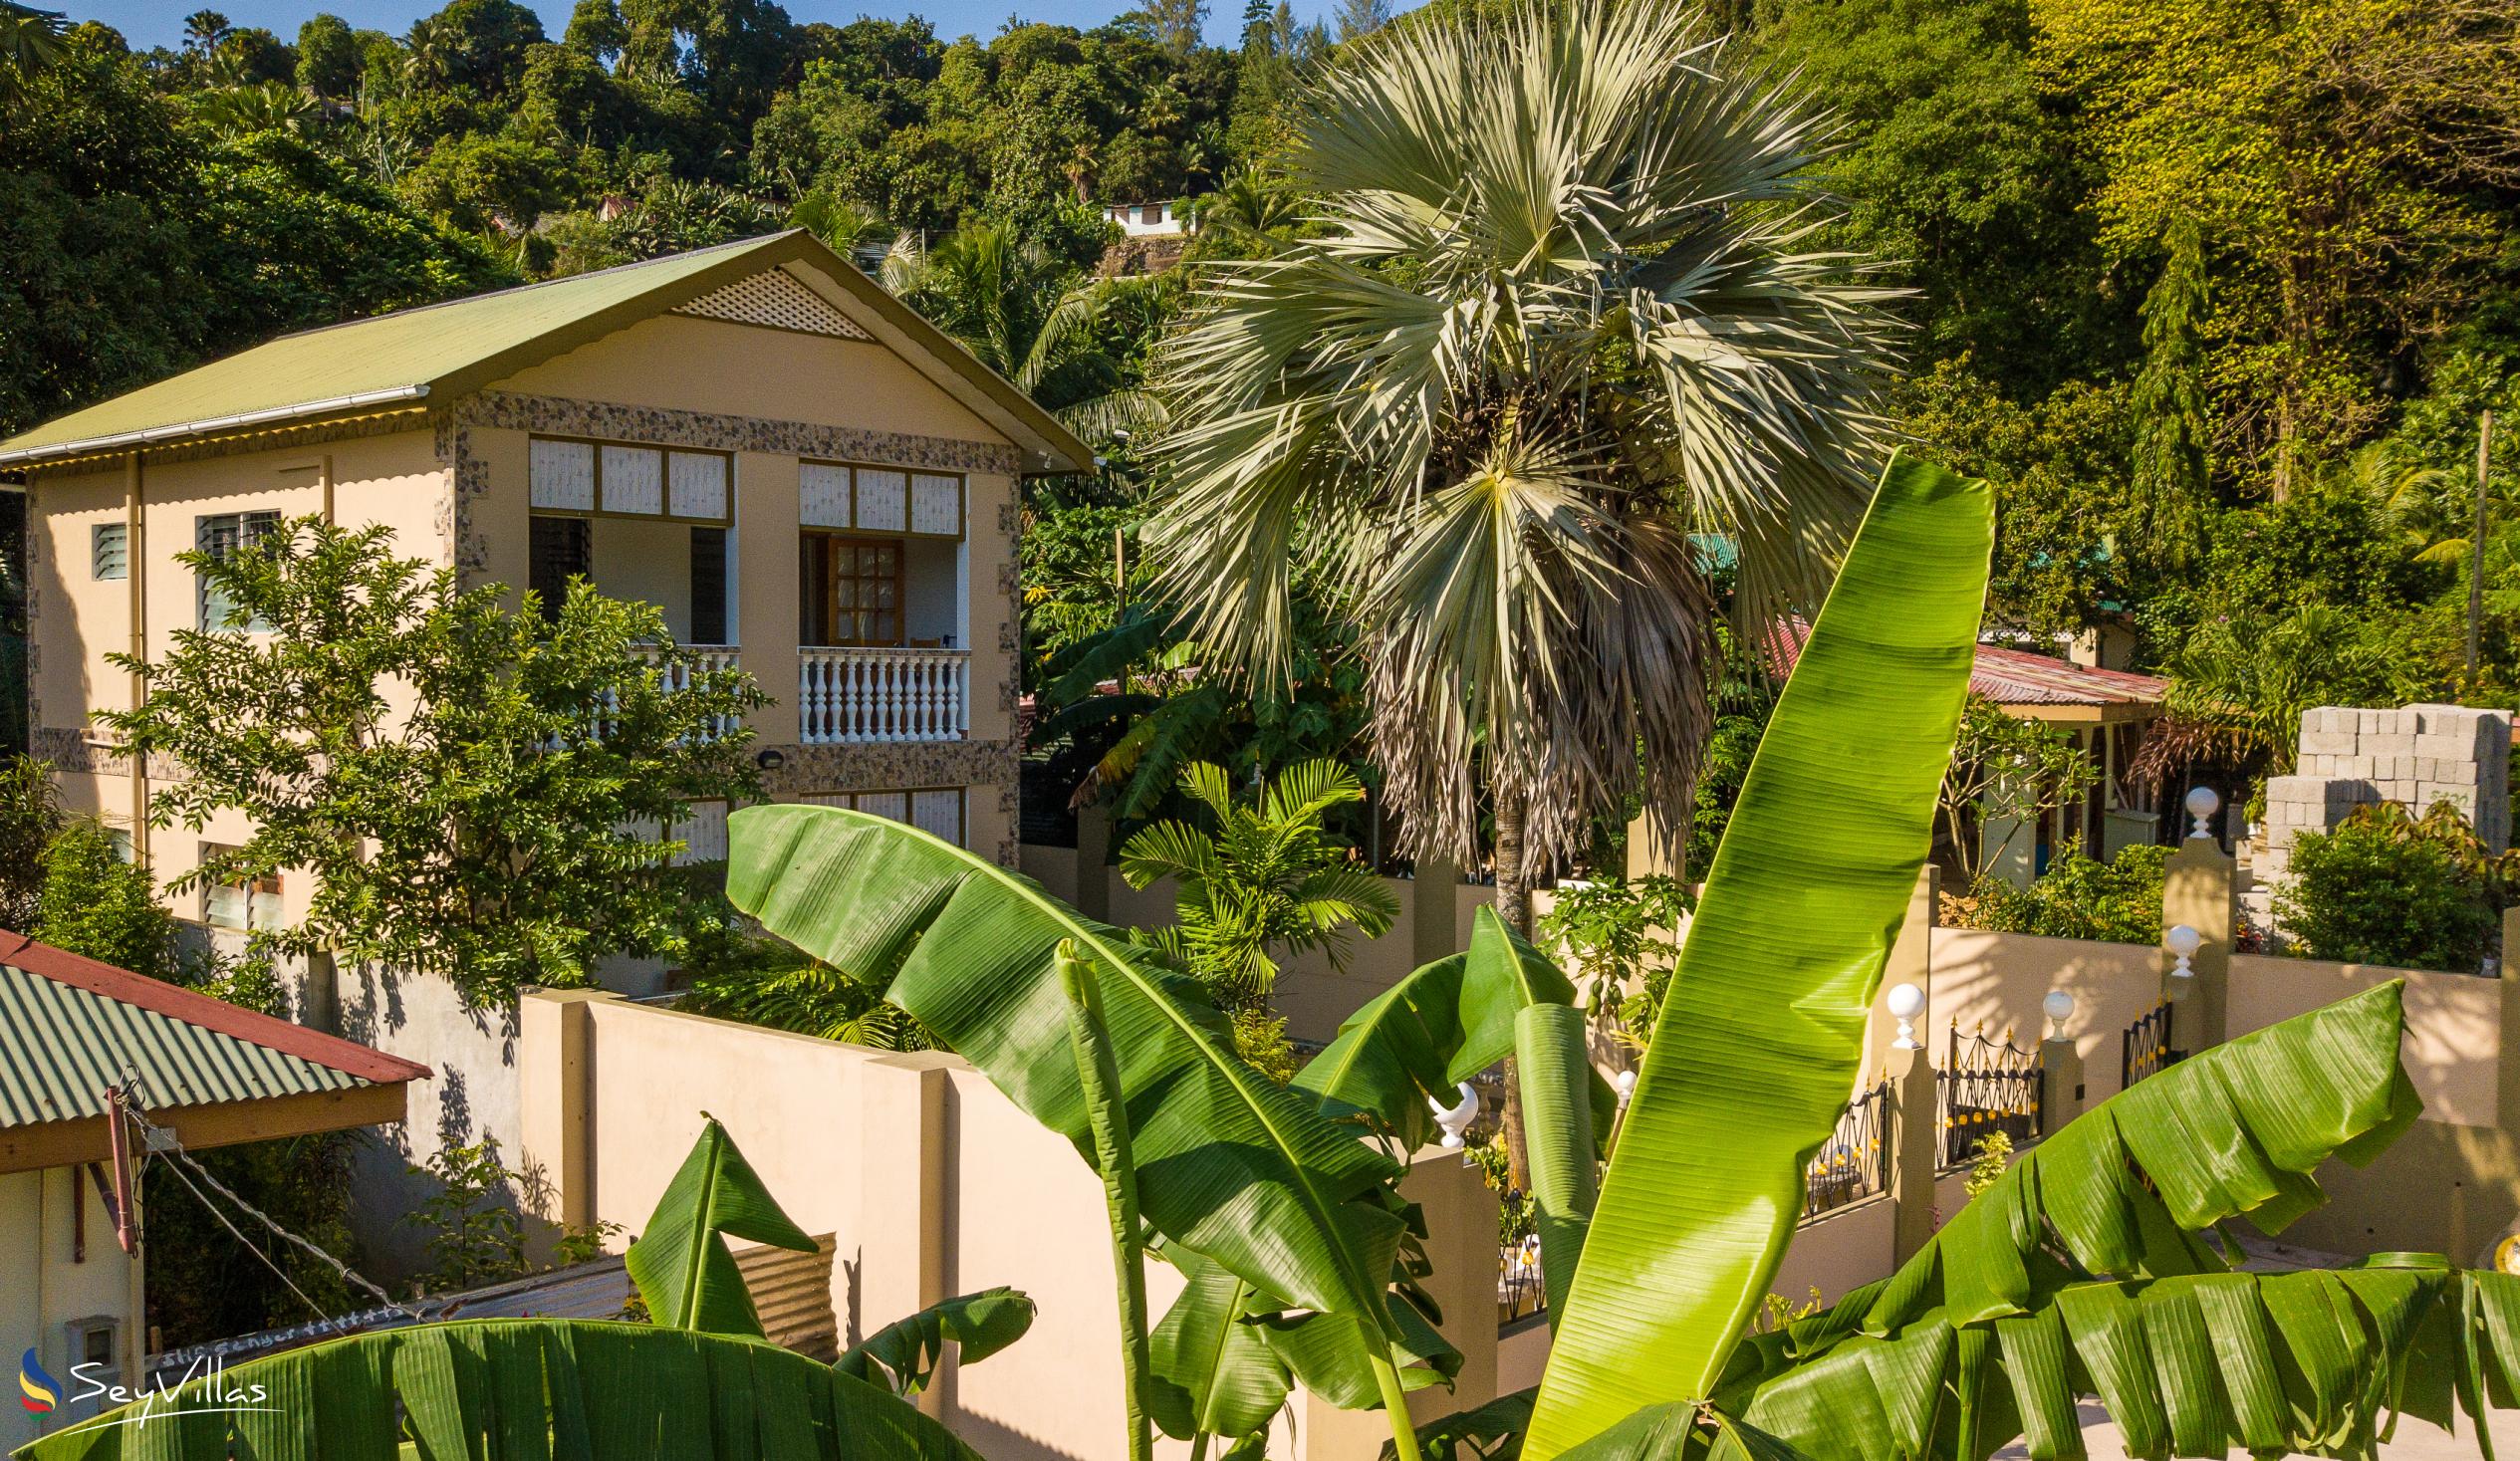 Foto 7: La Residence d'Almee - Aussenbereich - Praslin (Seychellen)